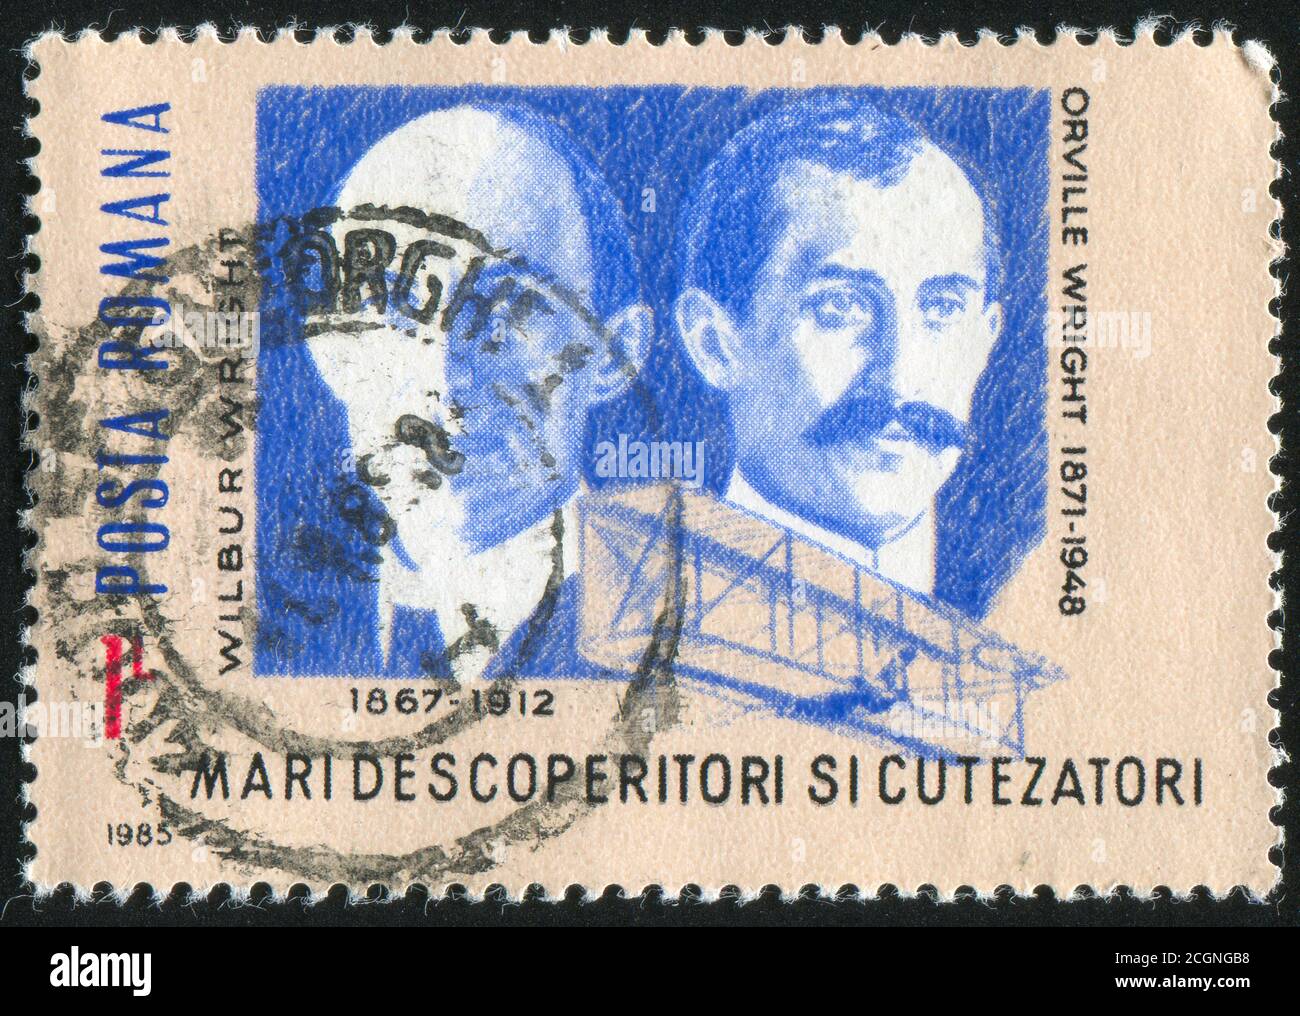 RUMÄNIEN - UM 1985: Briefmarke gedruckt von Rumänien, zeigen Orville und Wilbur Wright, Wright Flyer, um 1985. Stockfoto